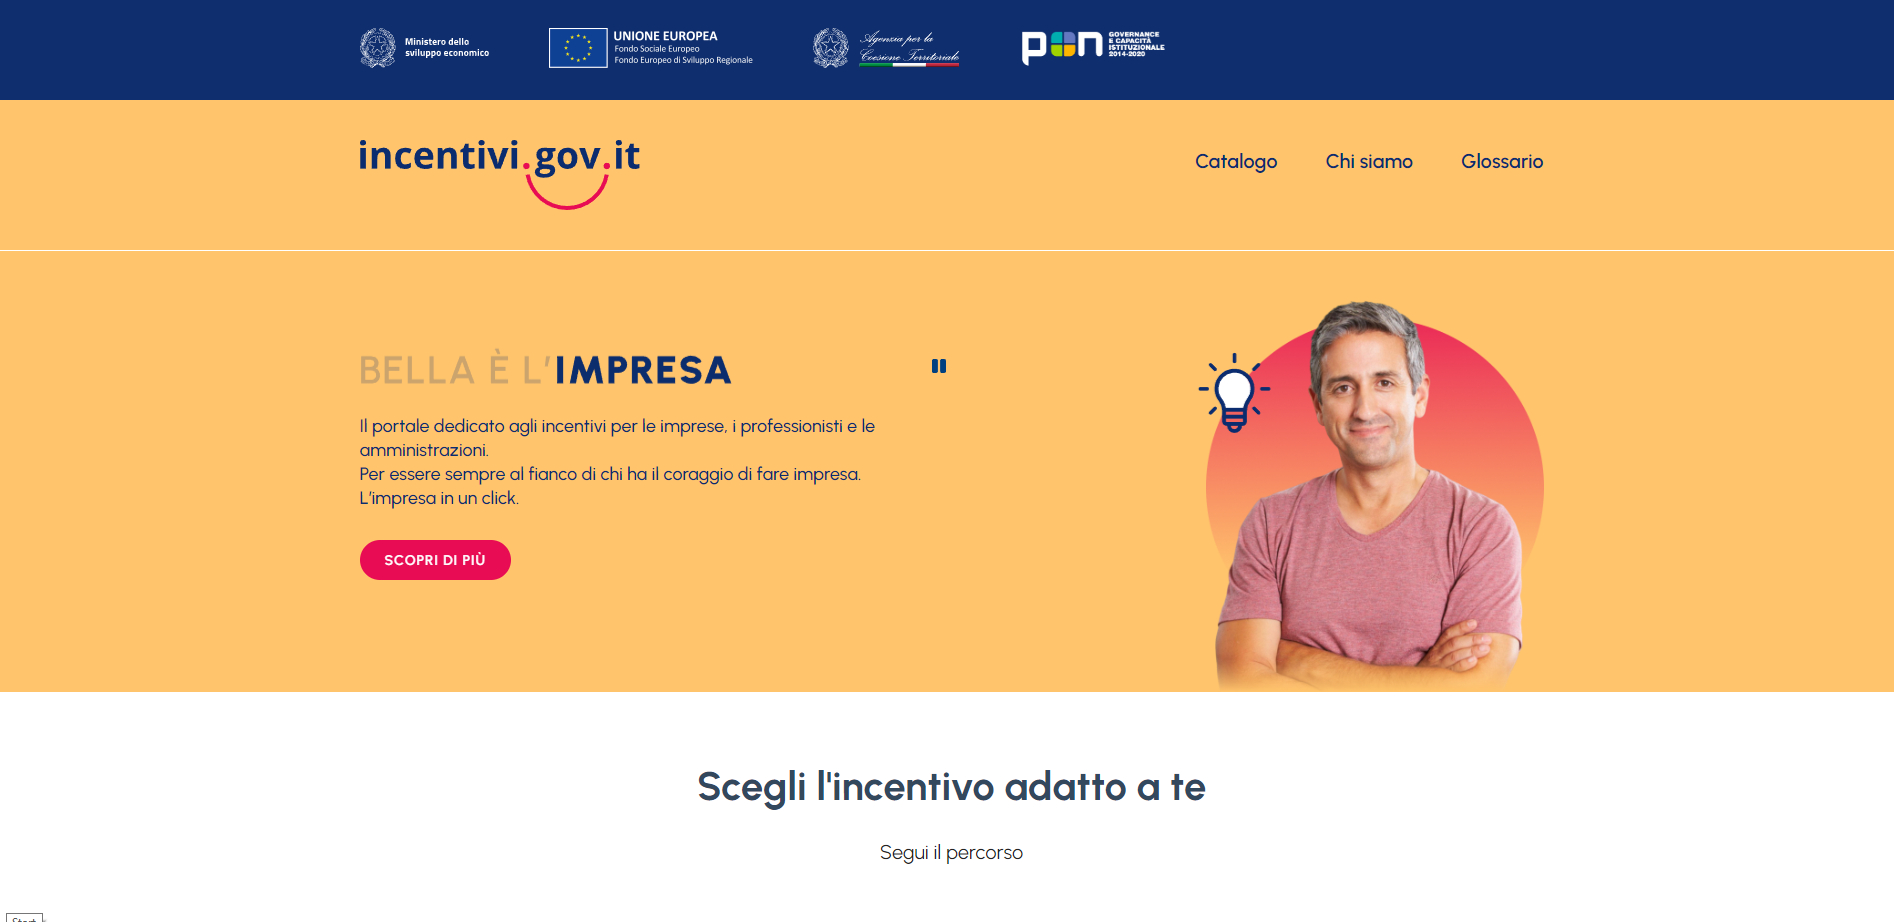 incentivi.gov.it: il portale del Mise per gli incentivi